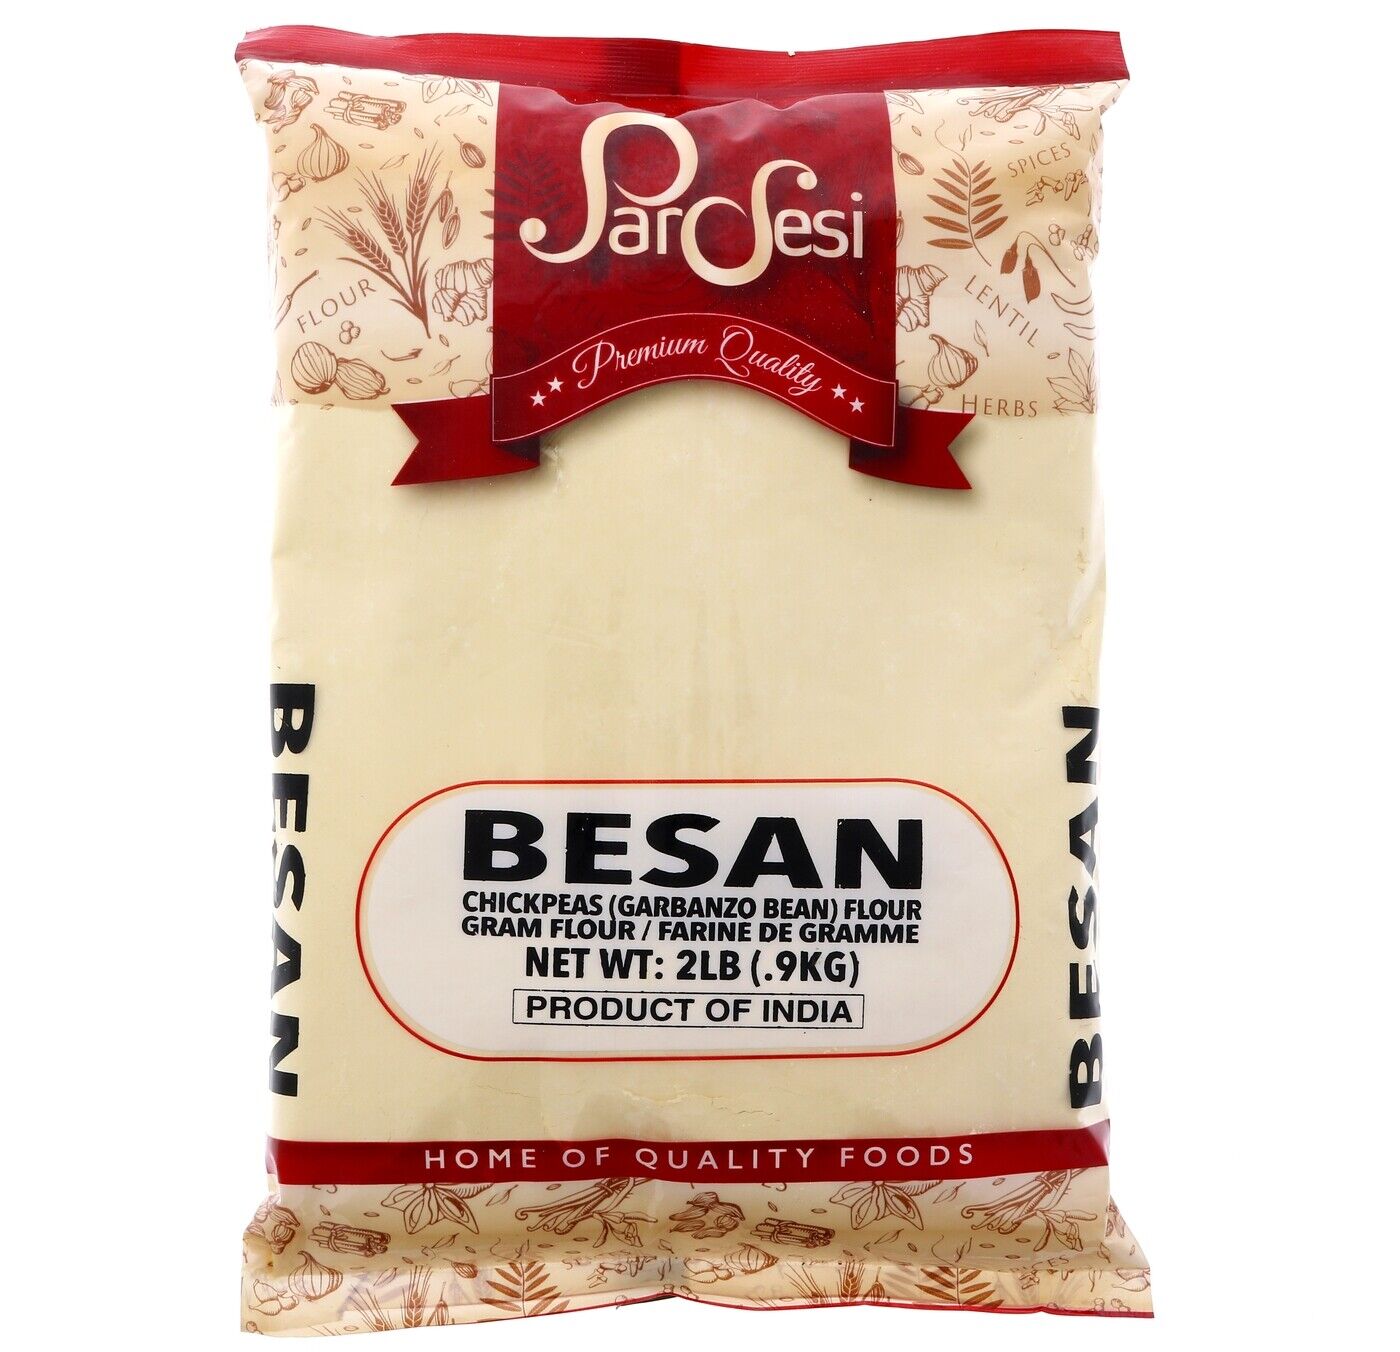 PARDESI Besan 2LB - Gram Flour, Chickpeas Flour